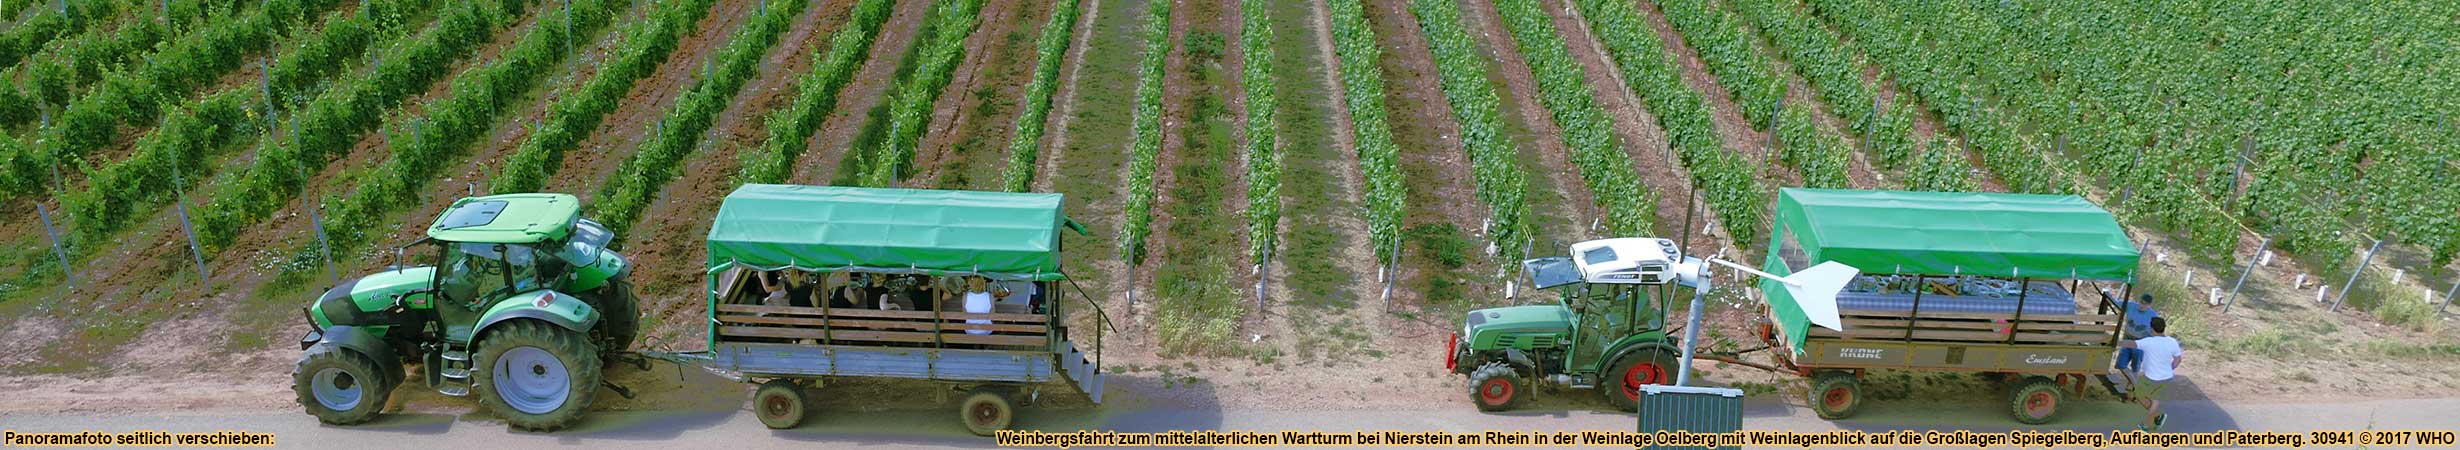 Weinbergsfahrt zur Fockenberghtte in der Weinlage Oelberg mit Blick auf die Weinlage Hipping bei Nierstein am Rhein.